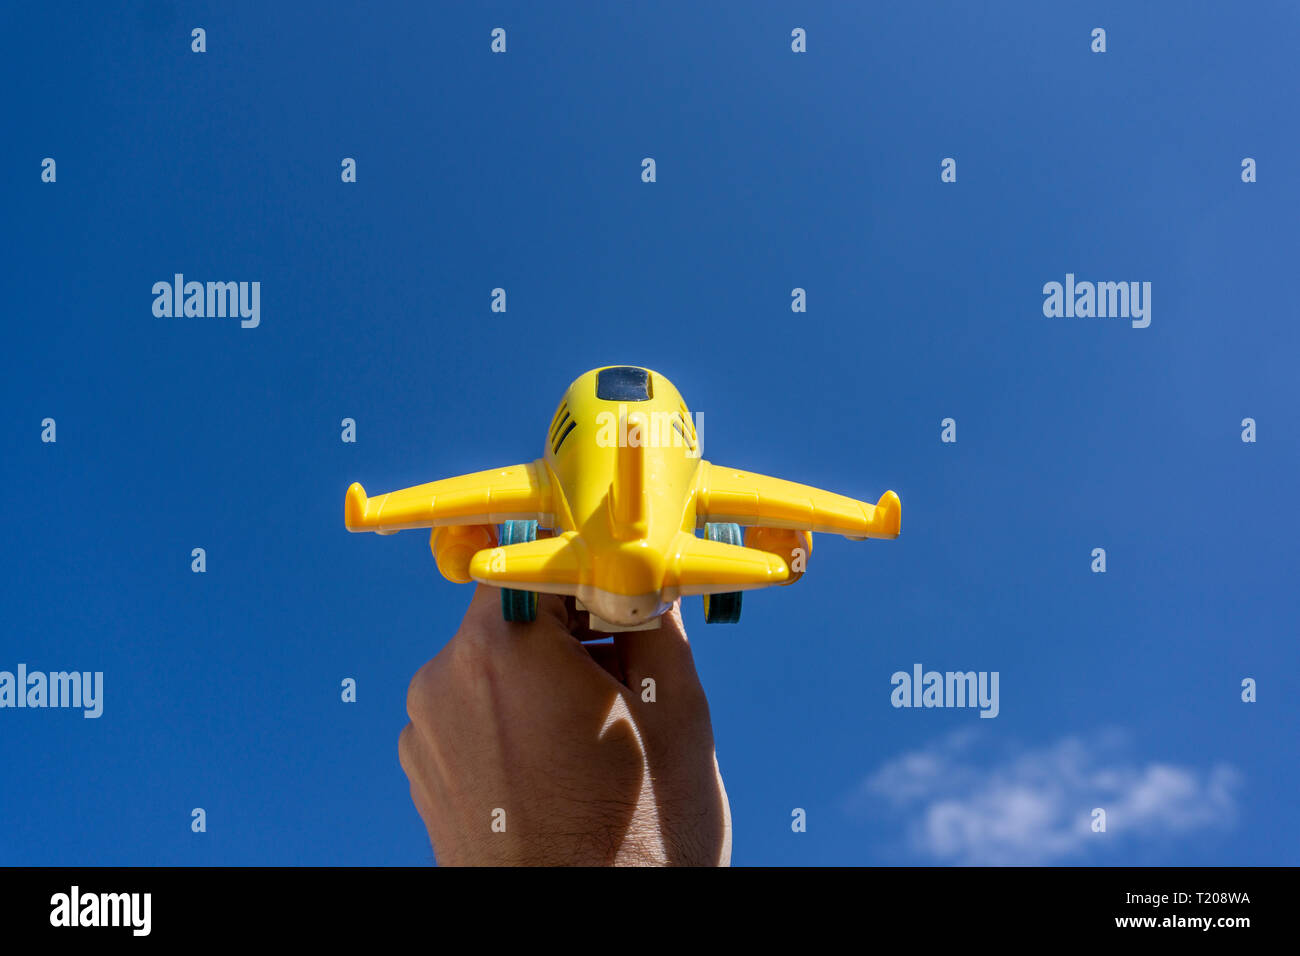 Gelb Spielzeug Flugzeug in der schönen blauen Himmel, negativen Raum, Konzept der gehen auf einen zauberhaften Urlaub, traumziel Fliegen Stockfoto